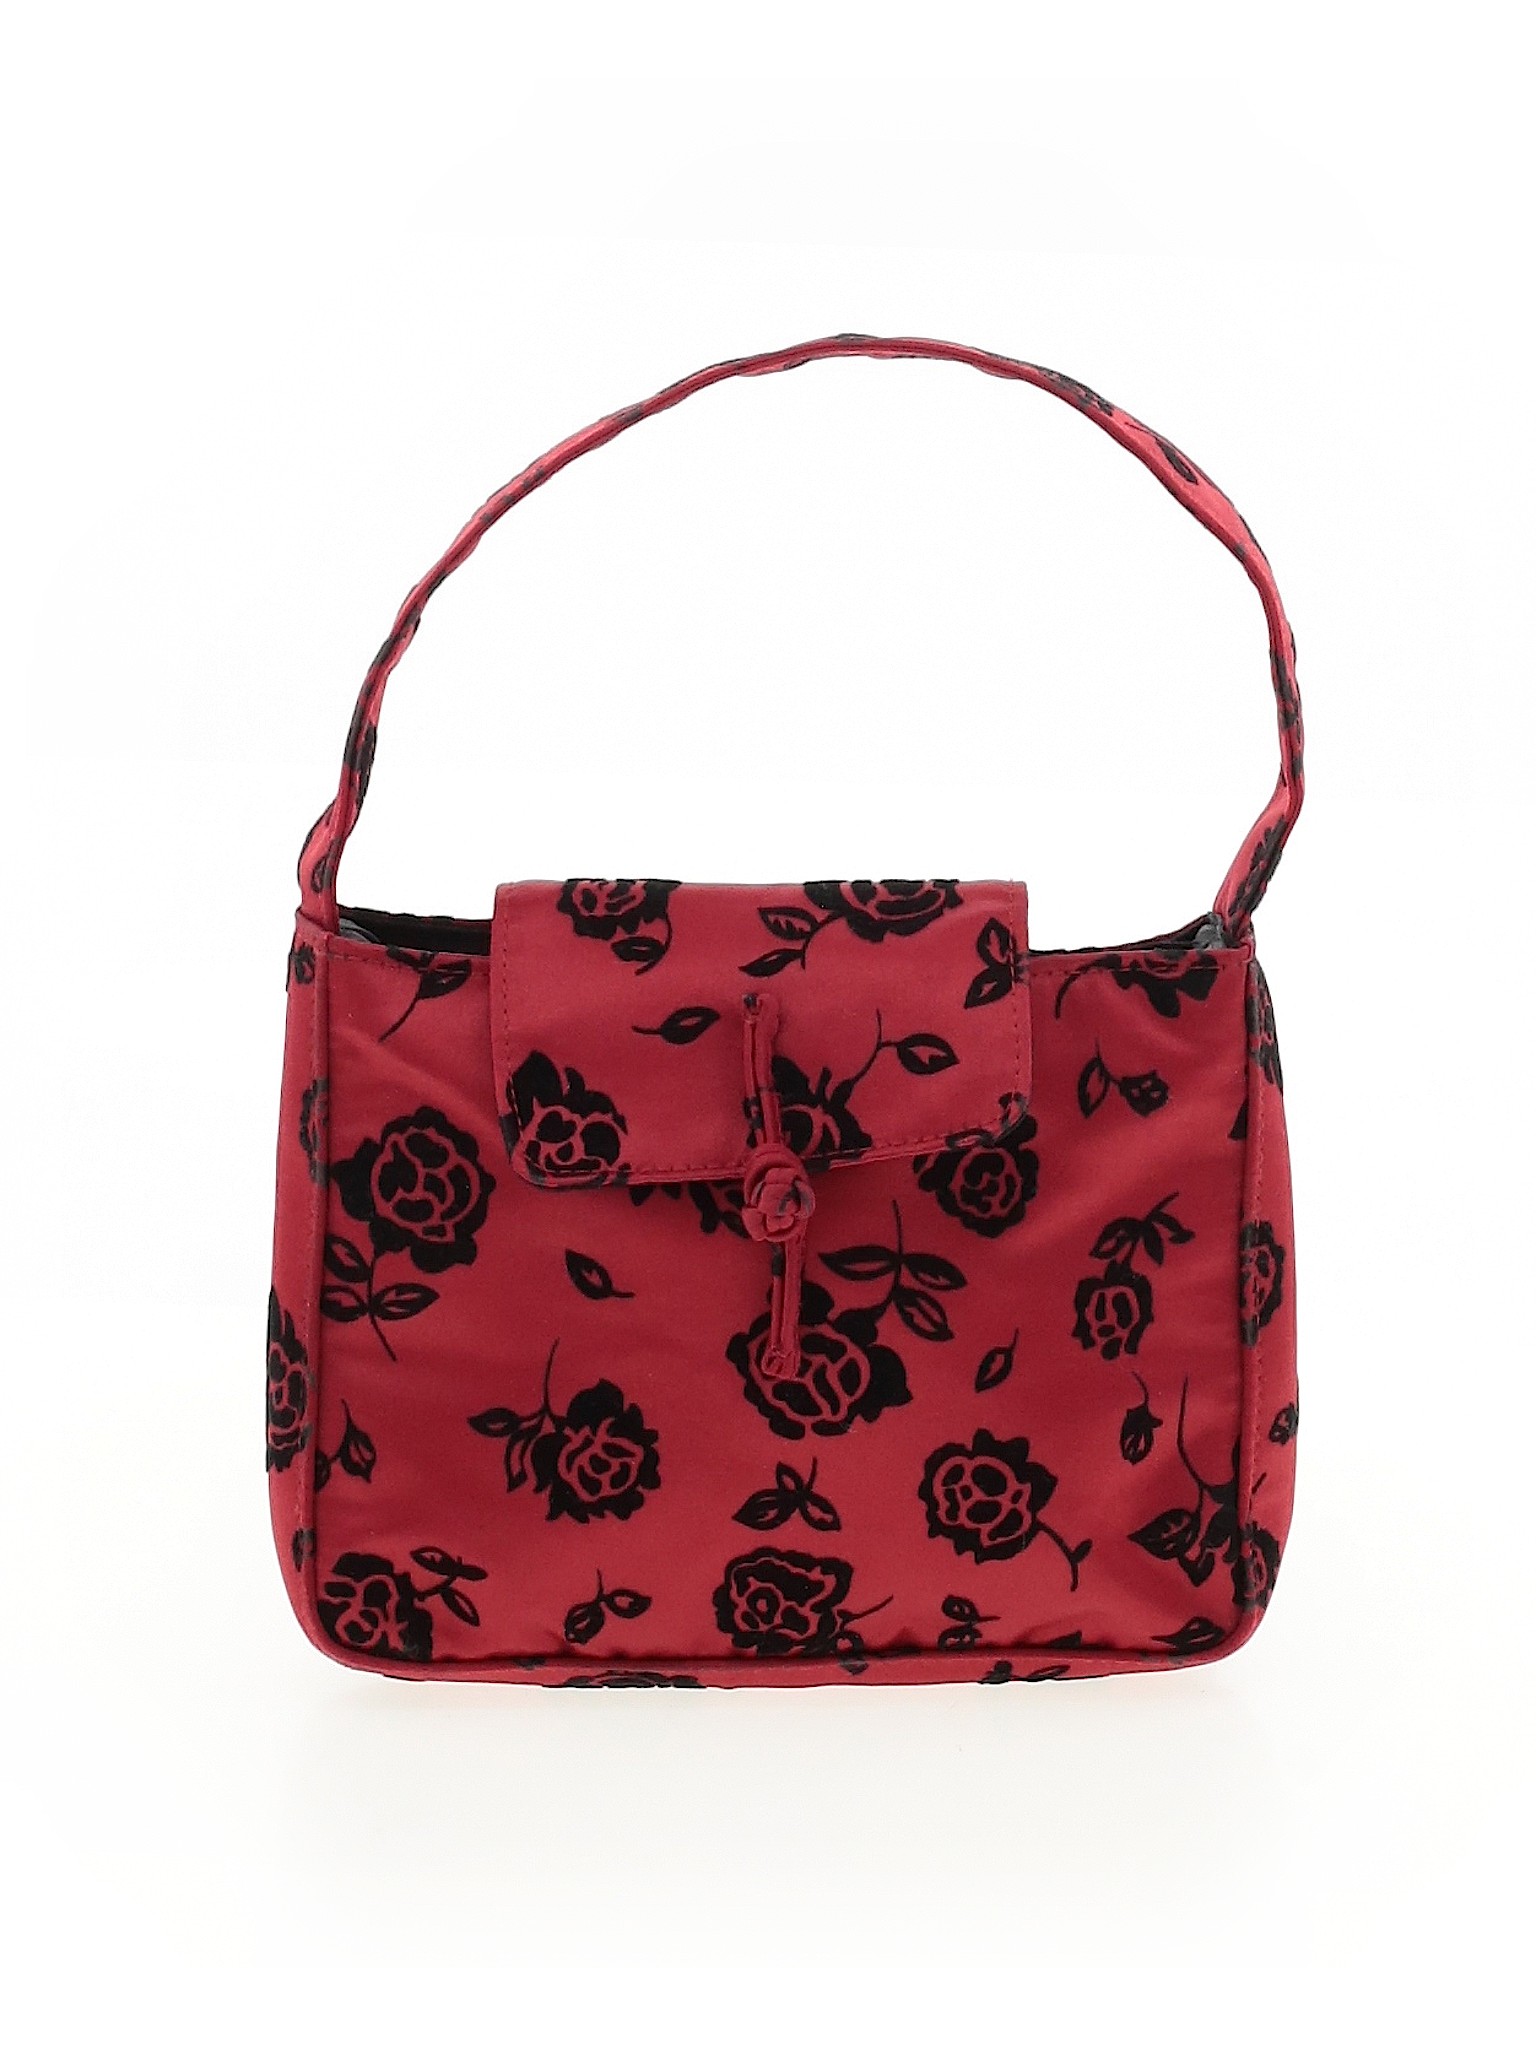 Gap Red Shoulder Bag One Size - 89% off | thredUP